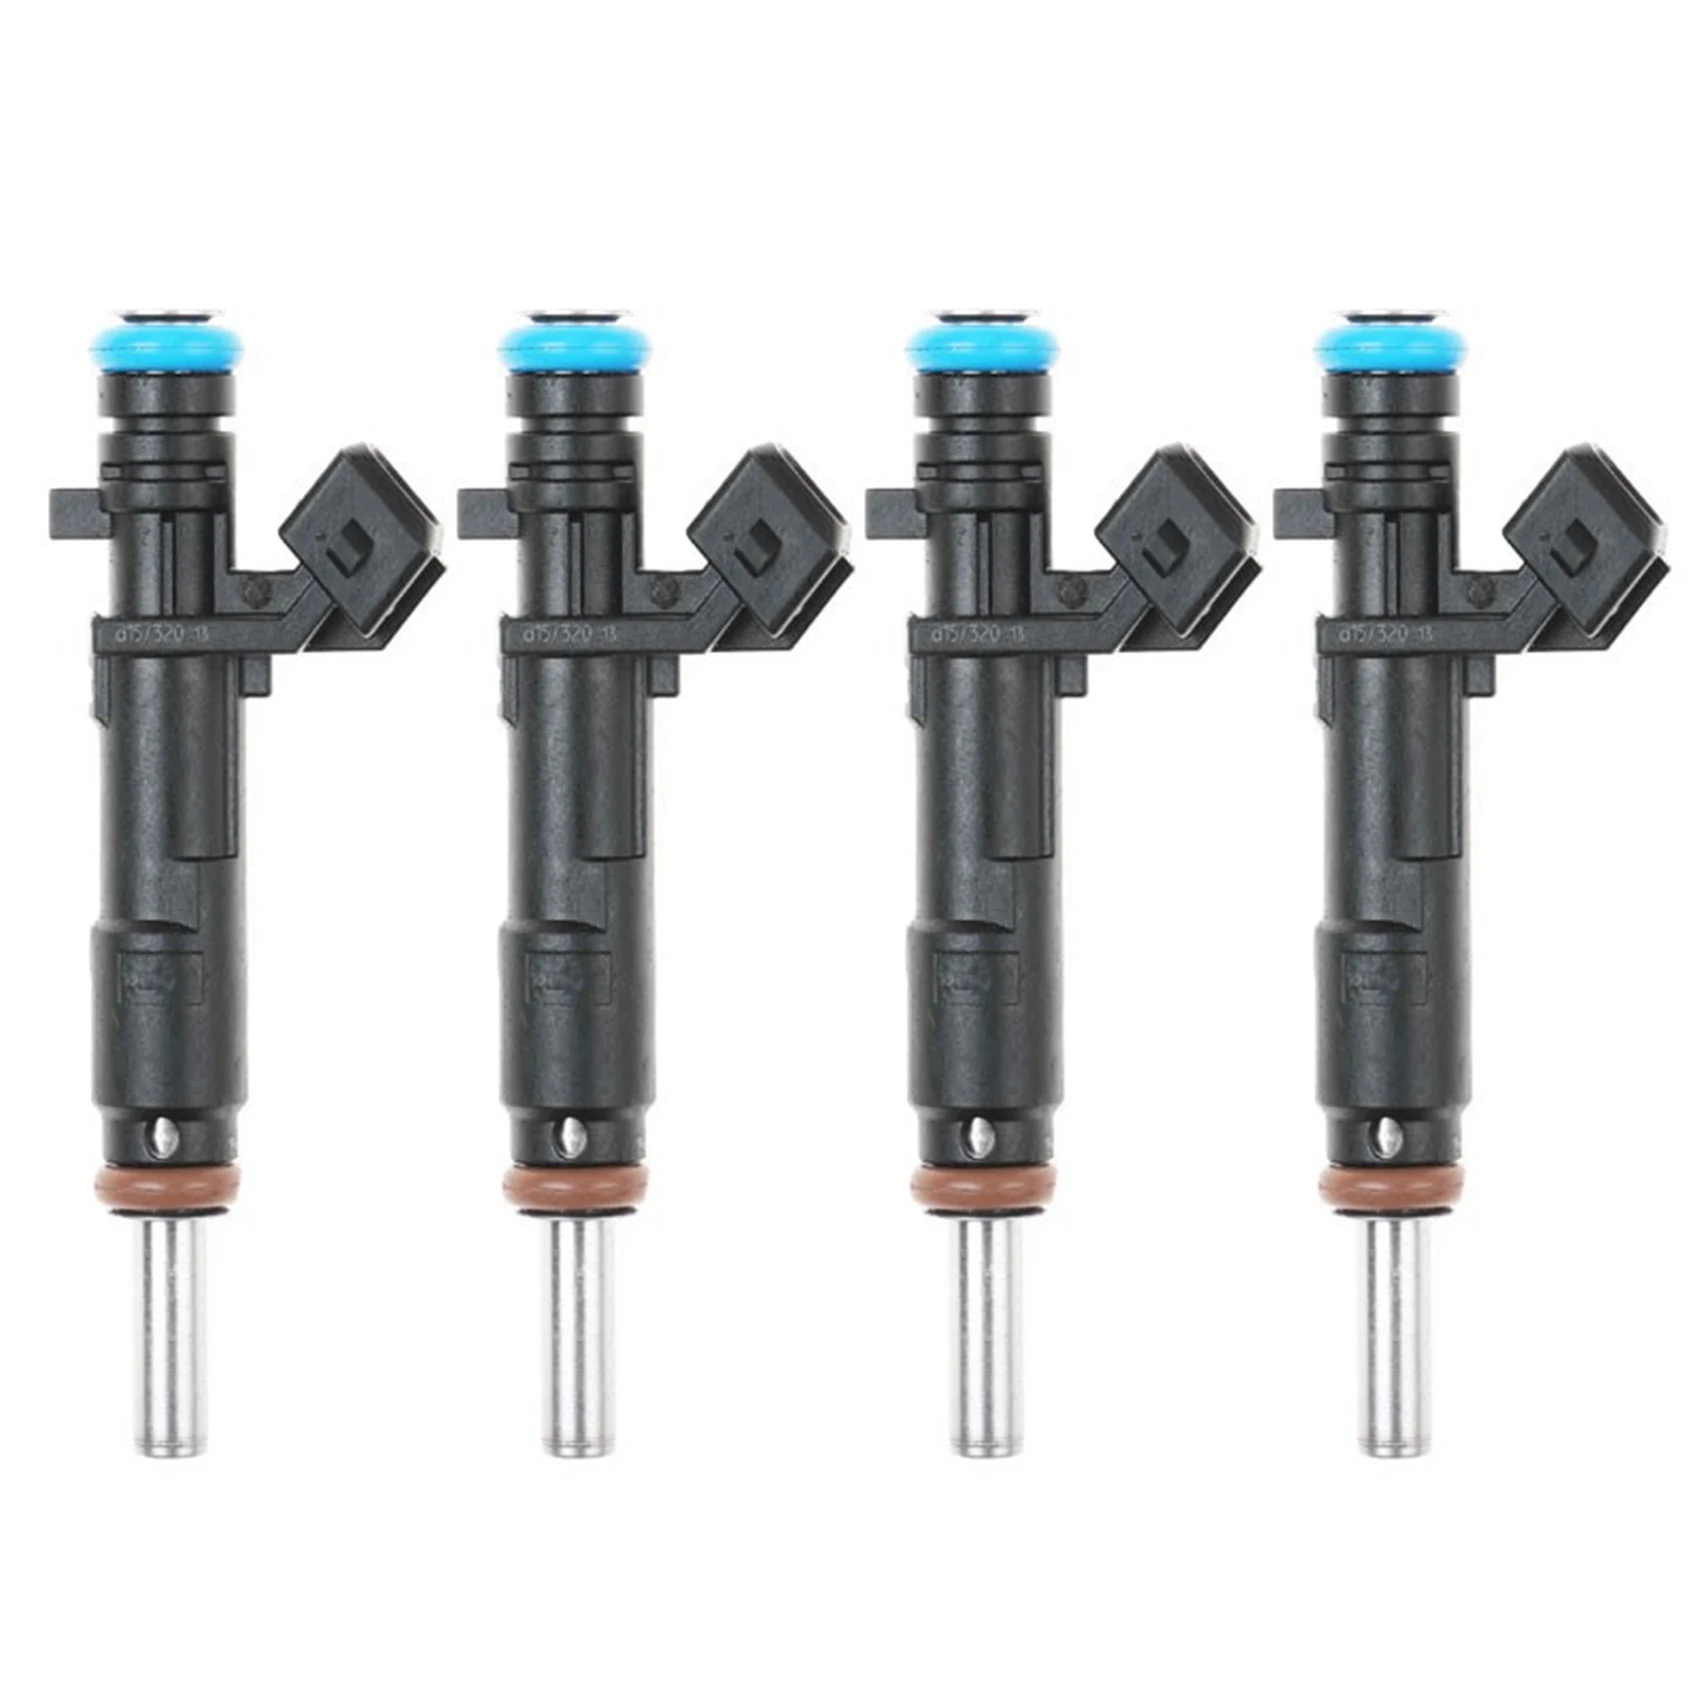 4PCS New Fuel Injectors Nozzle for Chevrolet Cruze Cruze Limited Sonic 1.8L L4 55570284 FJ1153